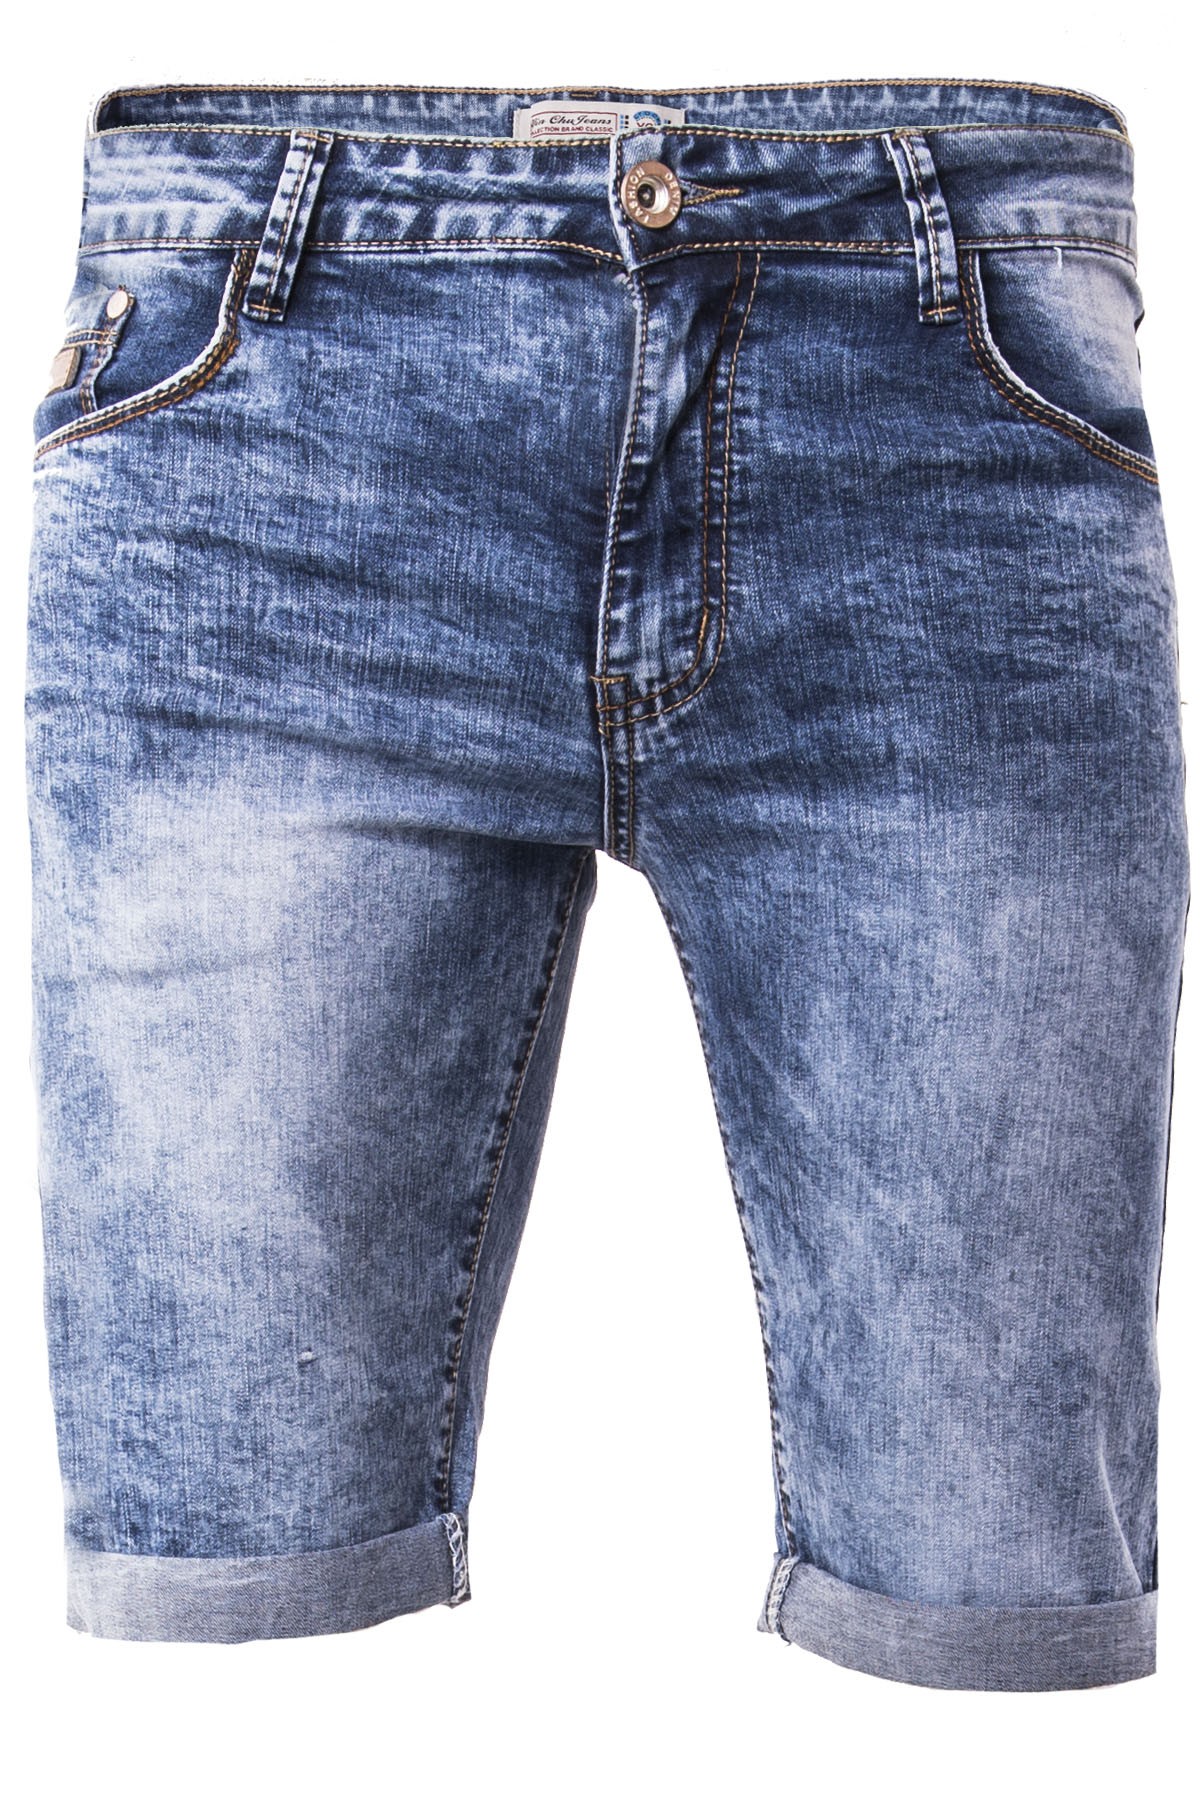 Spodenki męskie D102 jeansowe